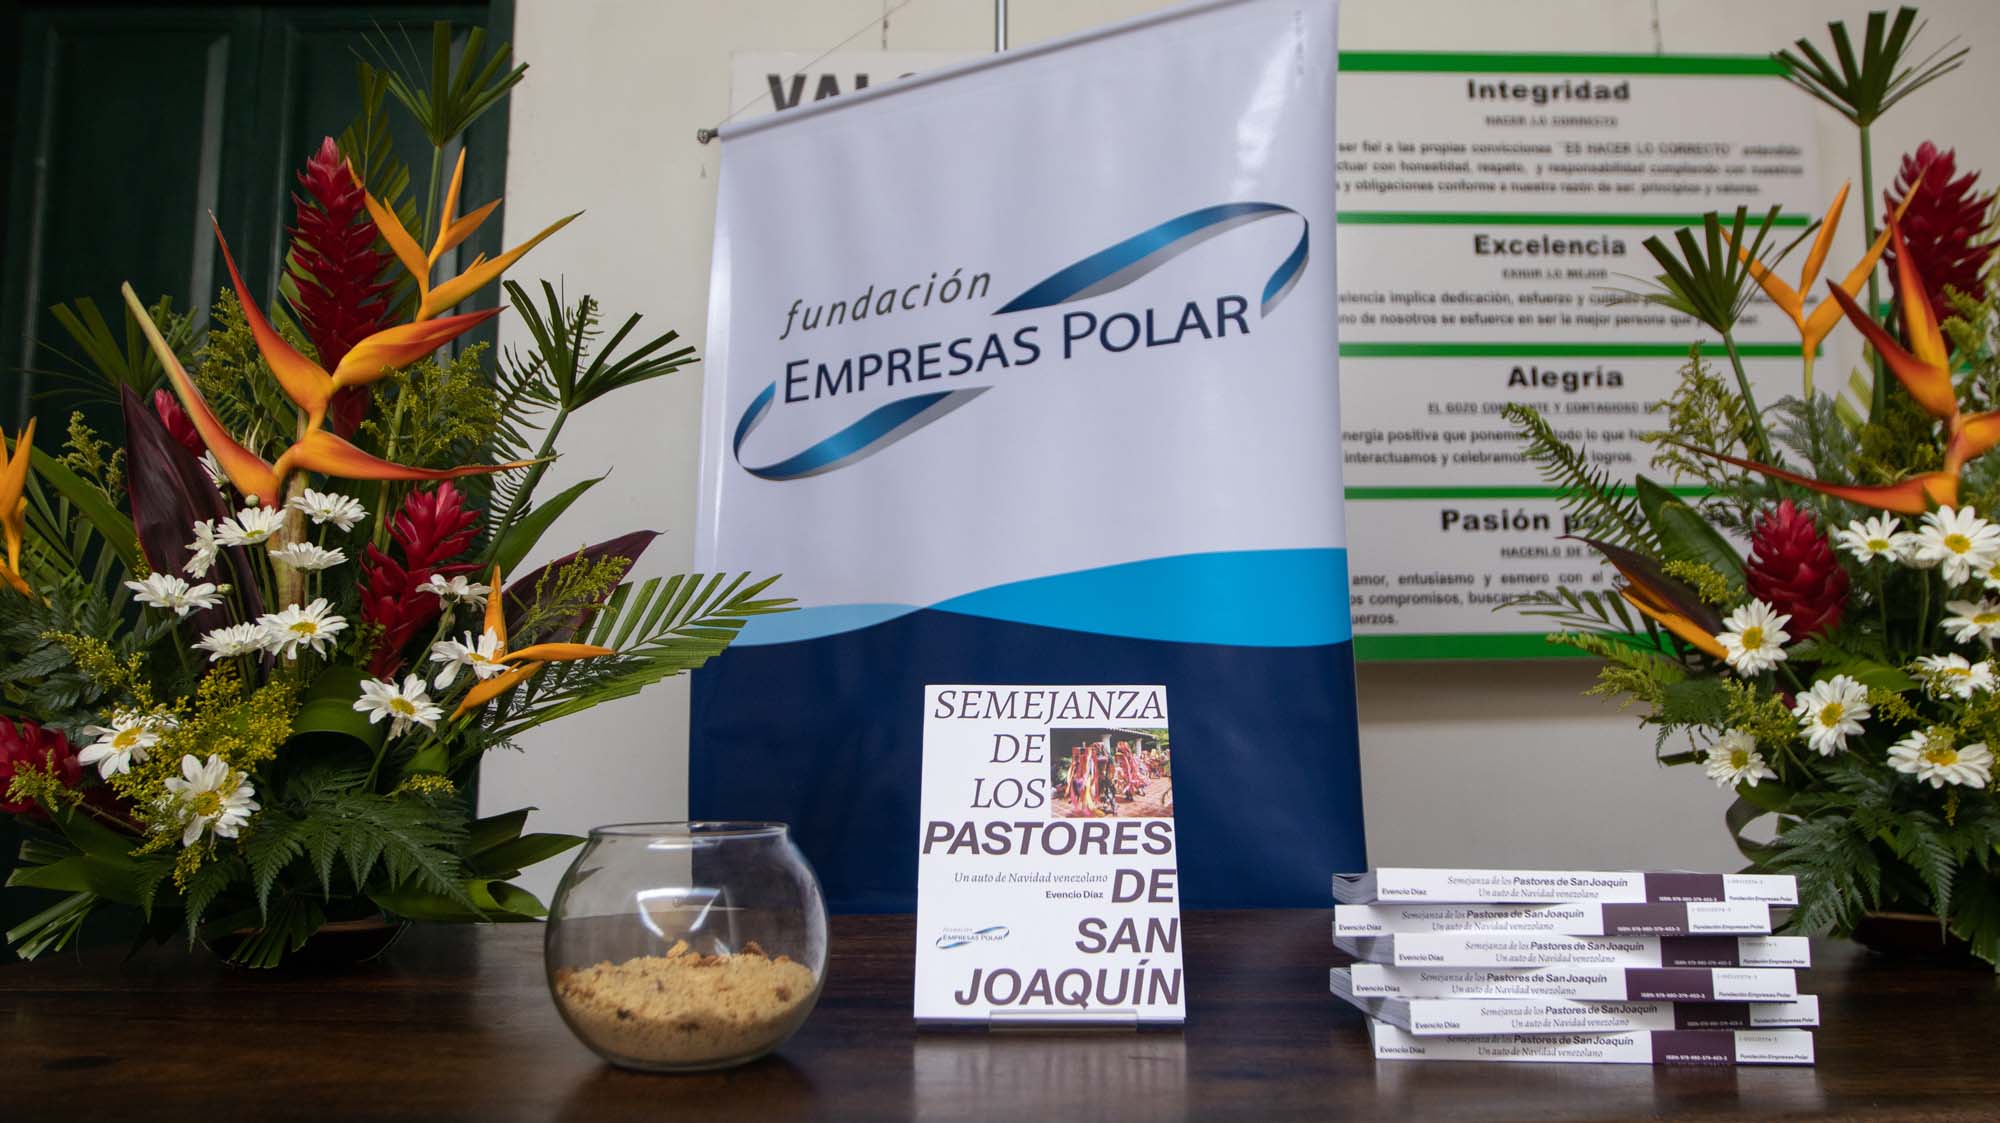 Semejanza de Los Pastores de San Joaquín - noticiacn